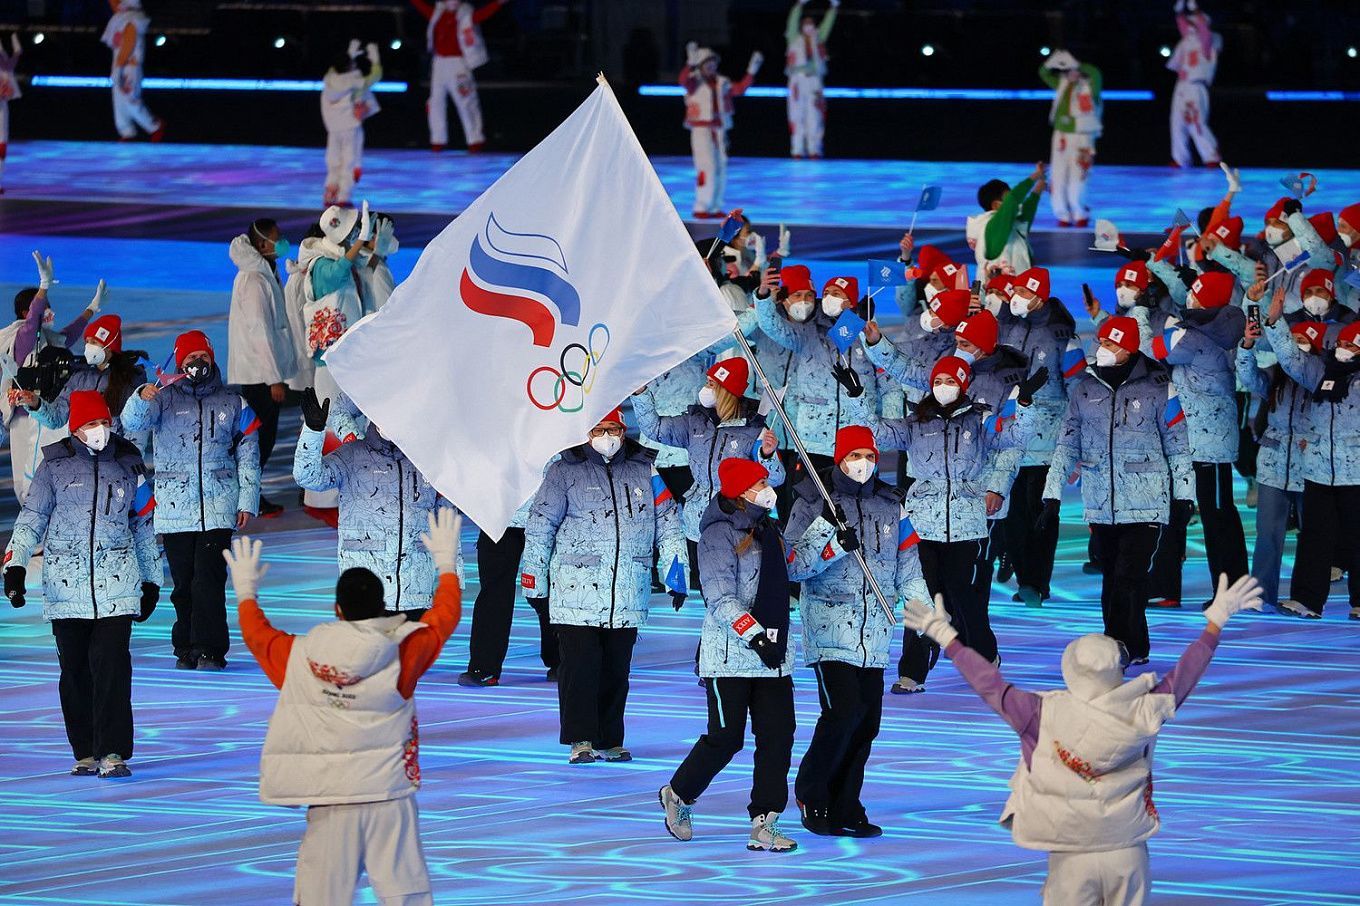 Apuestas y pronosticos sobre los Juegos Olimpicos: El equipo ruso esta preparado para compensar el fracaso en Pyeongchang│4 de febrero de 2022  